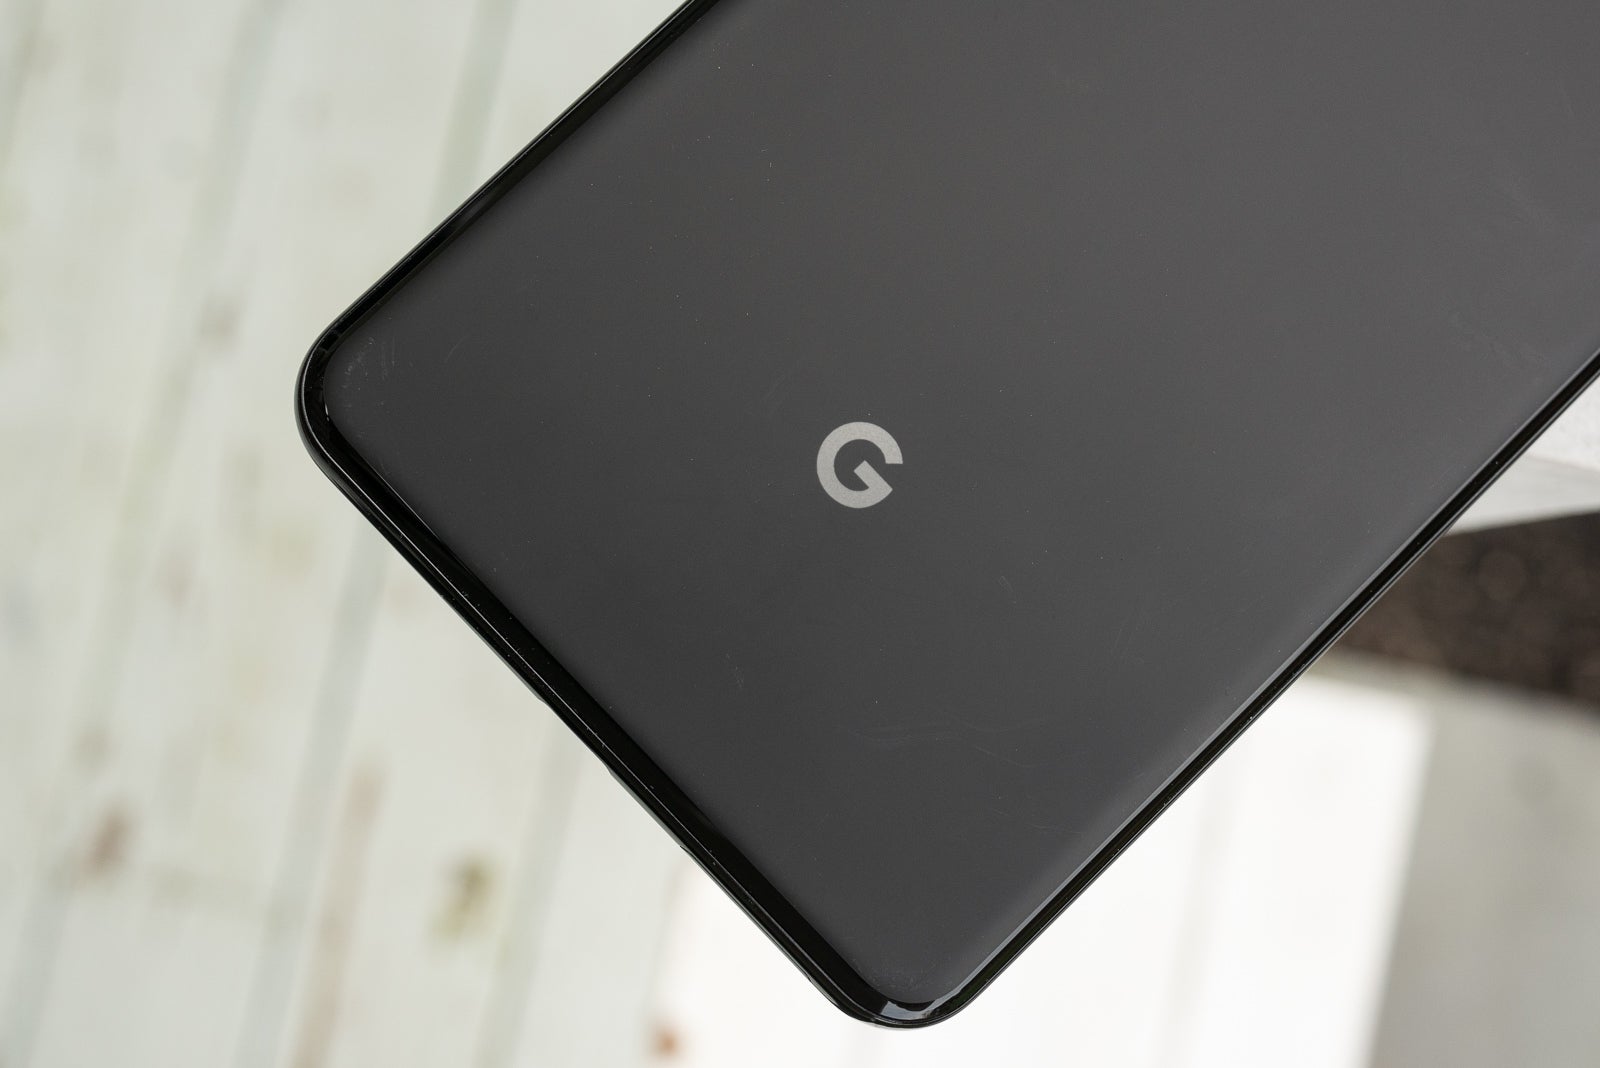 Google struggled to sell Pixel 3 smartphones last quarter